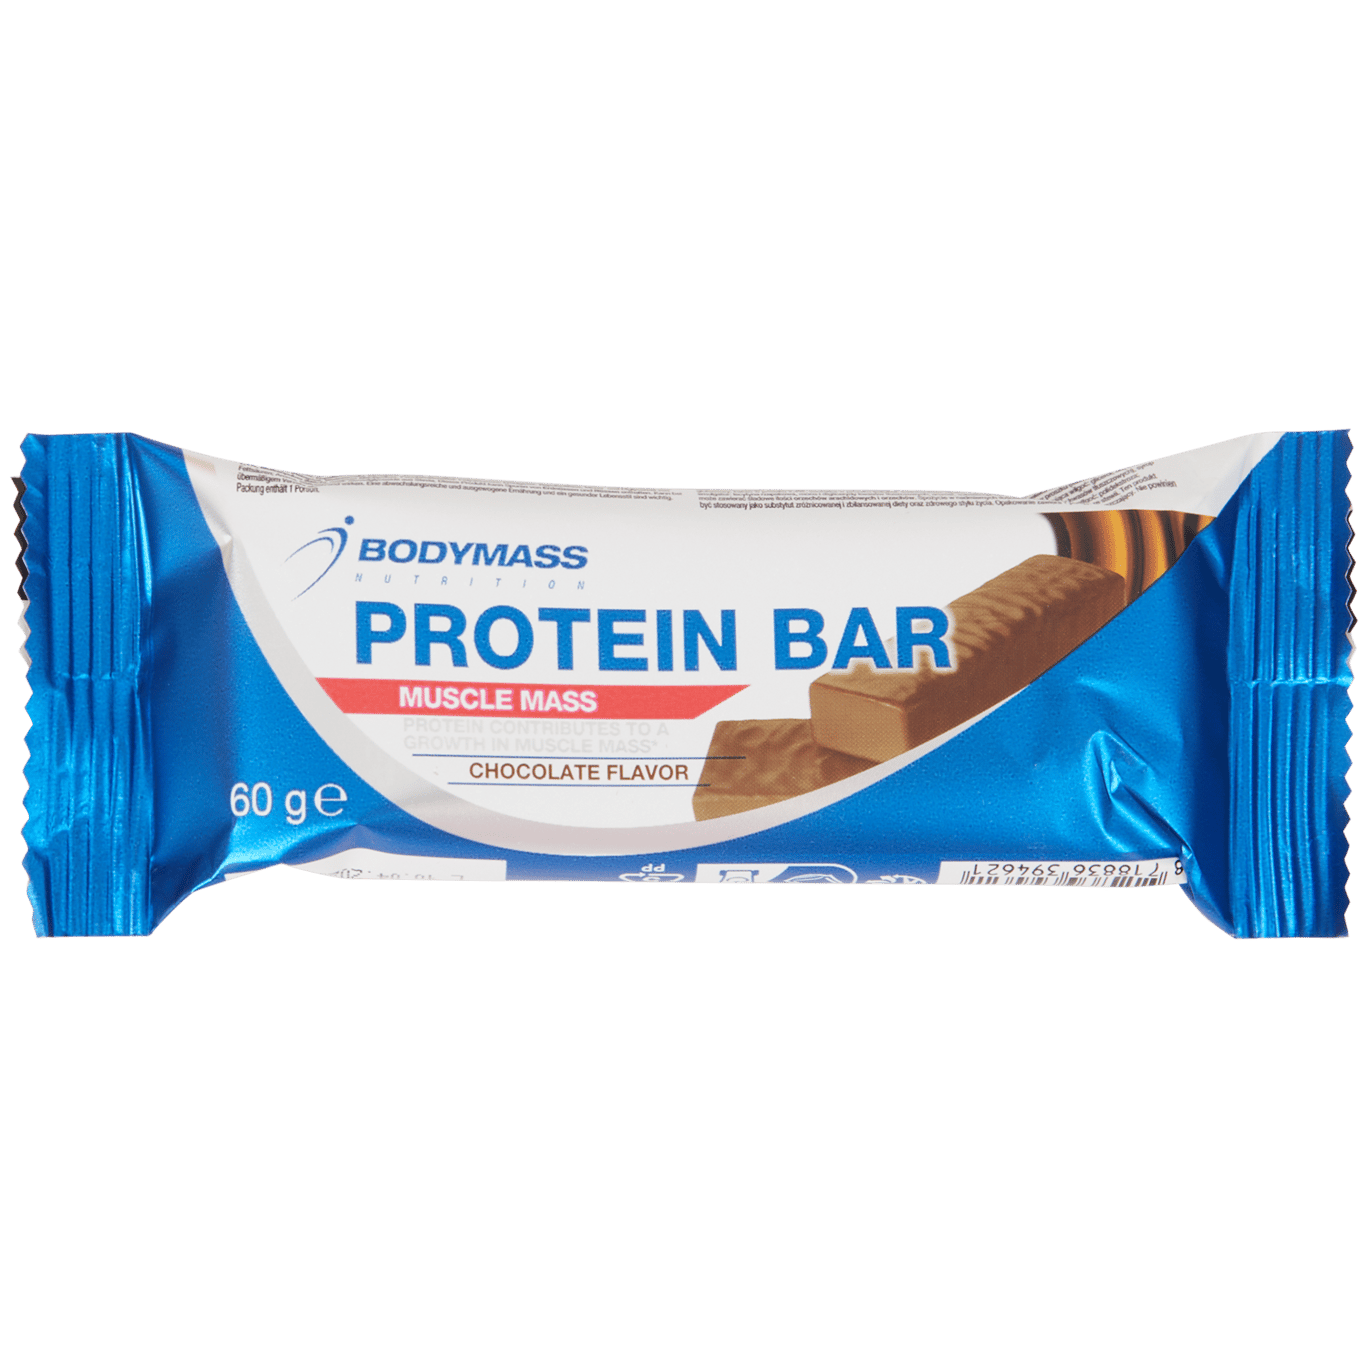 Baton proteinowy Bodymass